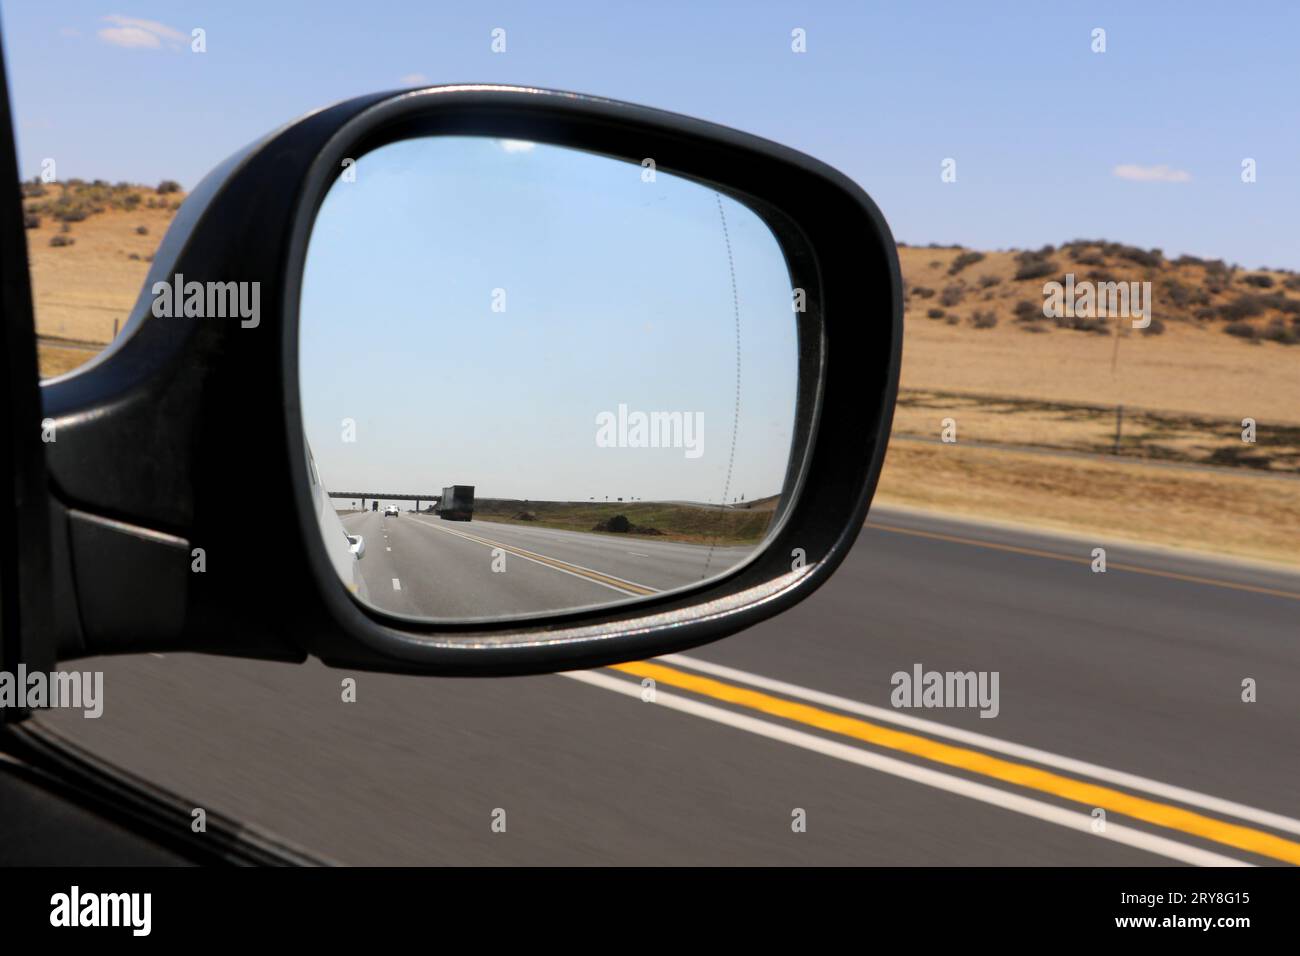 Rückblick im seitlichen Außenspiegel des Fahrzeugs, Rechtslenkung, Sicht des Fahrers Stockfoto